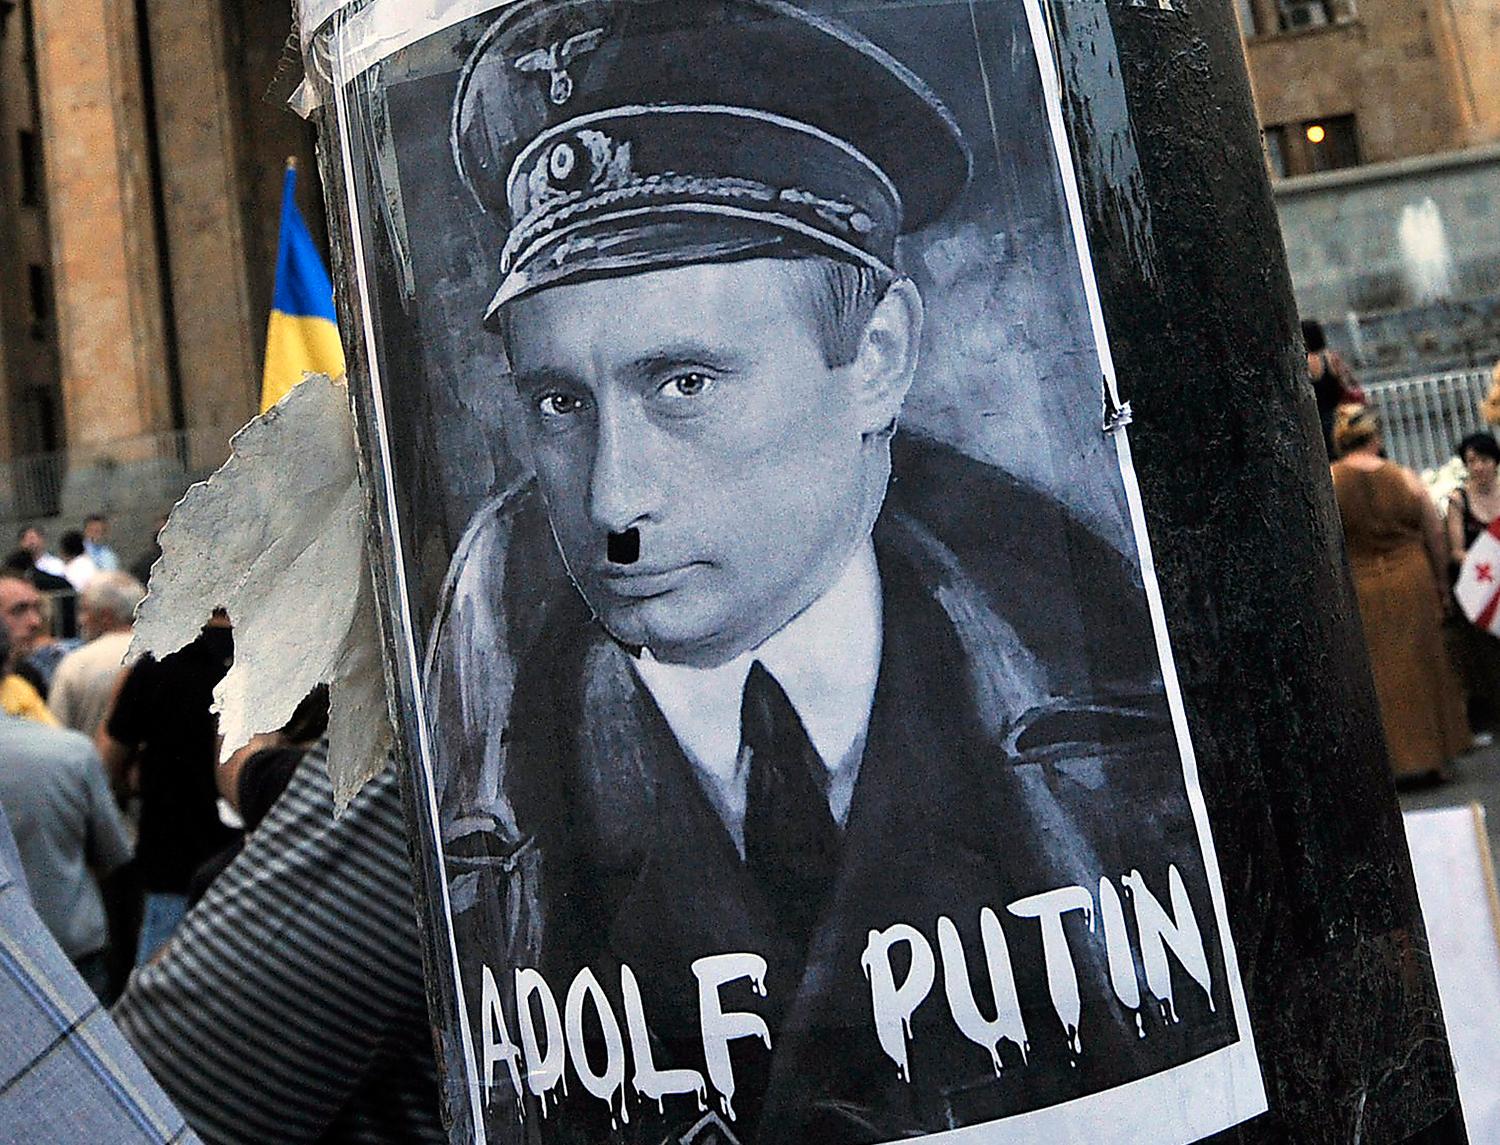 I demonstrationer jämförs ofta den ryske presidenten Vladimir Putin med Adolf Hitler. Foto: AP